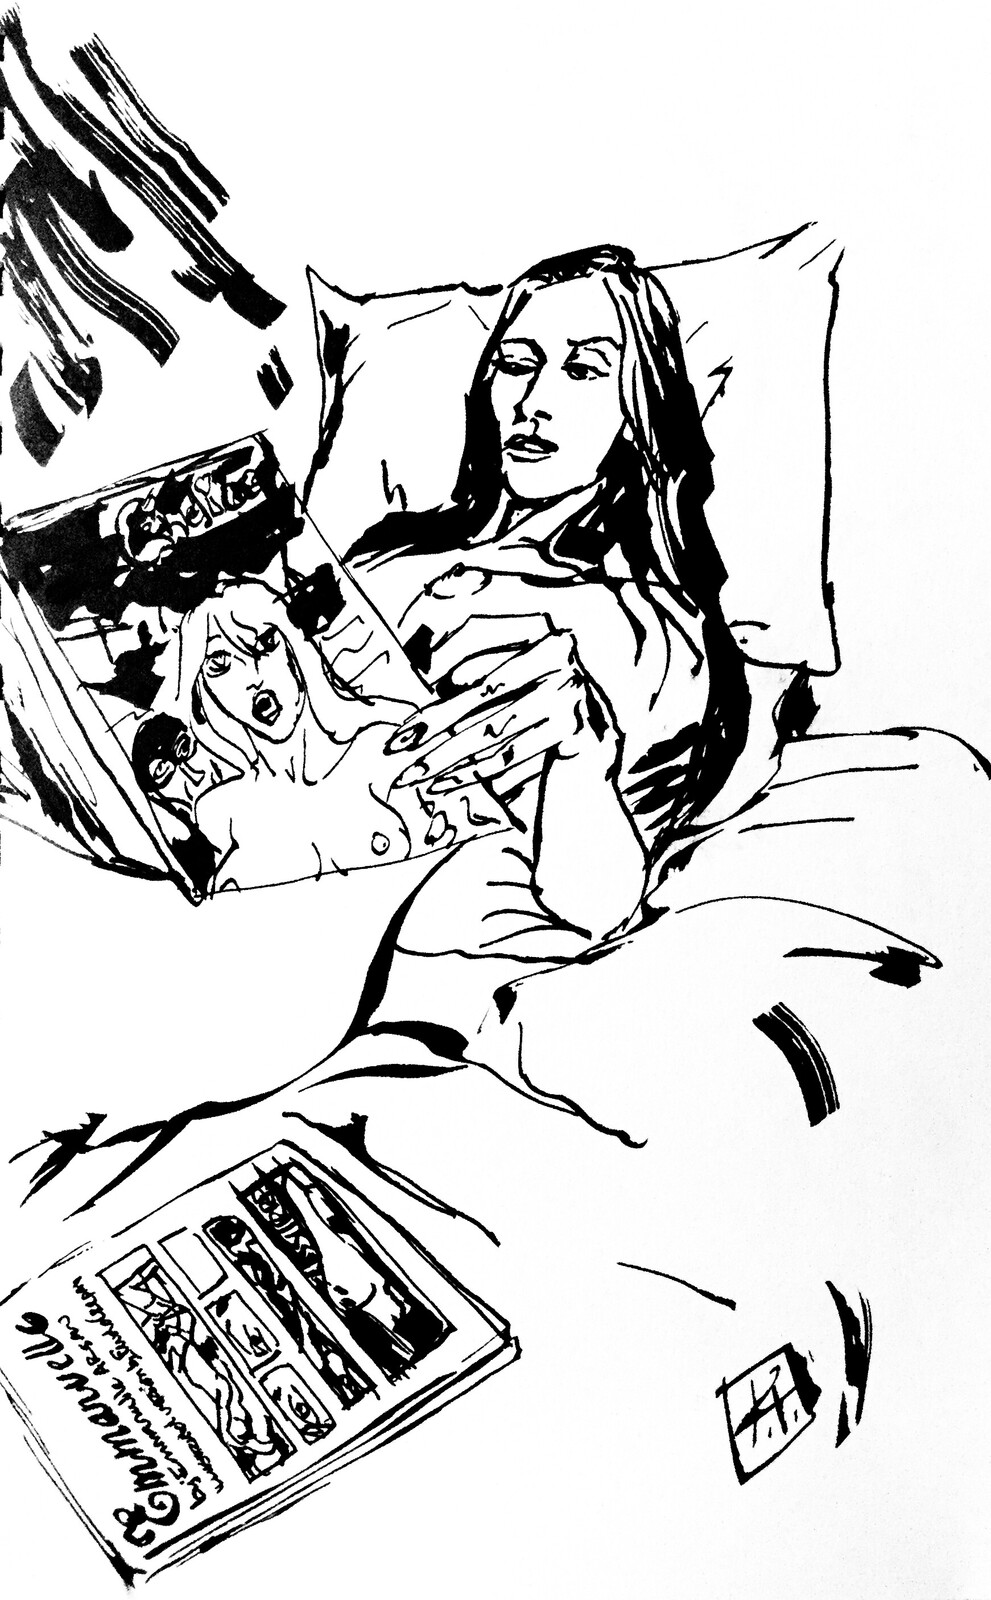 Bedtime Reading - Inks